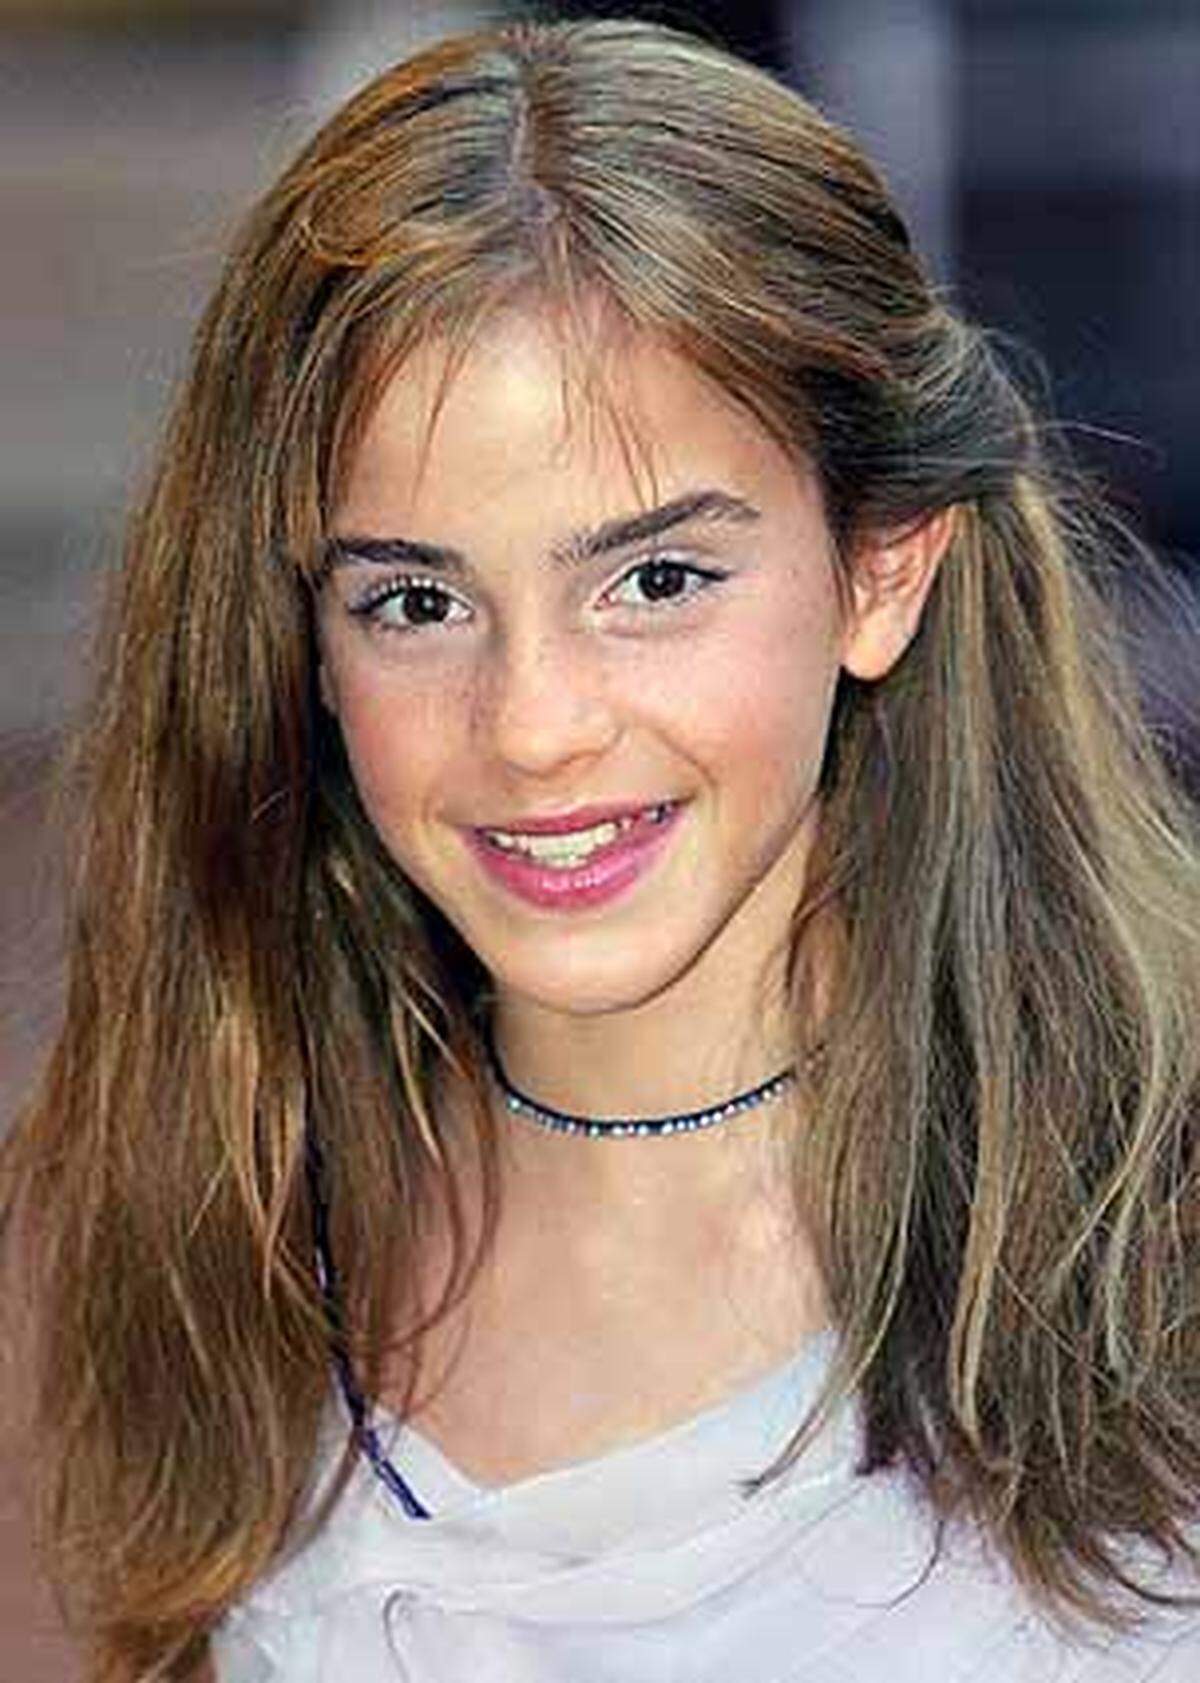 Zum 18. Geburtstag bekam Emma Watson ein ungewöhnliches Präsent. Ihre Eltern schenken ihr einen privaten Crash-Kurs zum Thema "Verantwortungsbewusstsein für Millionäre".